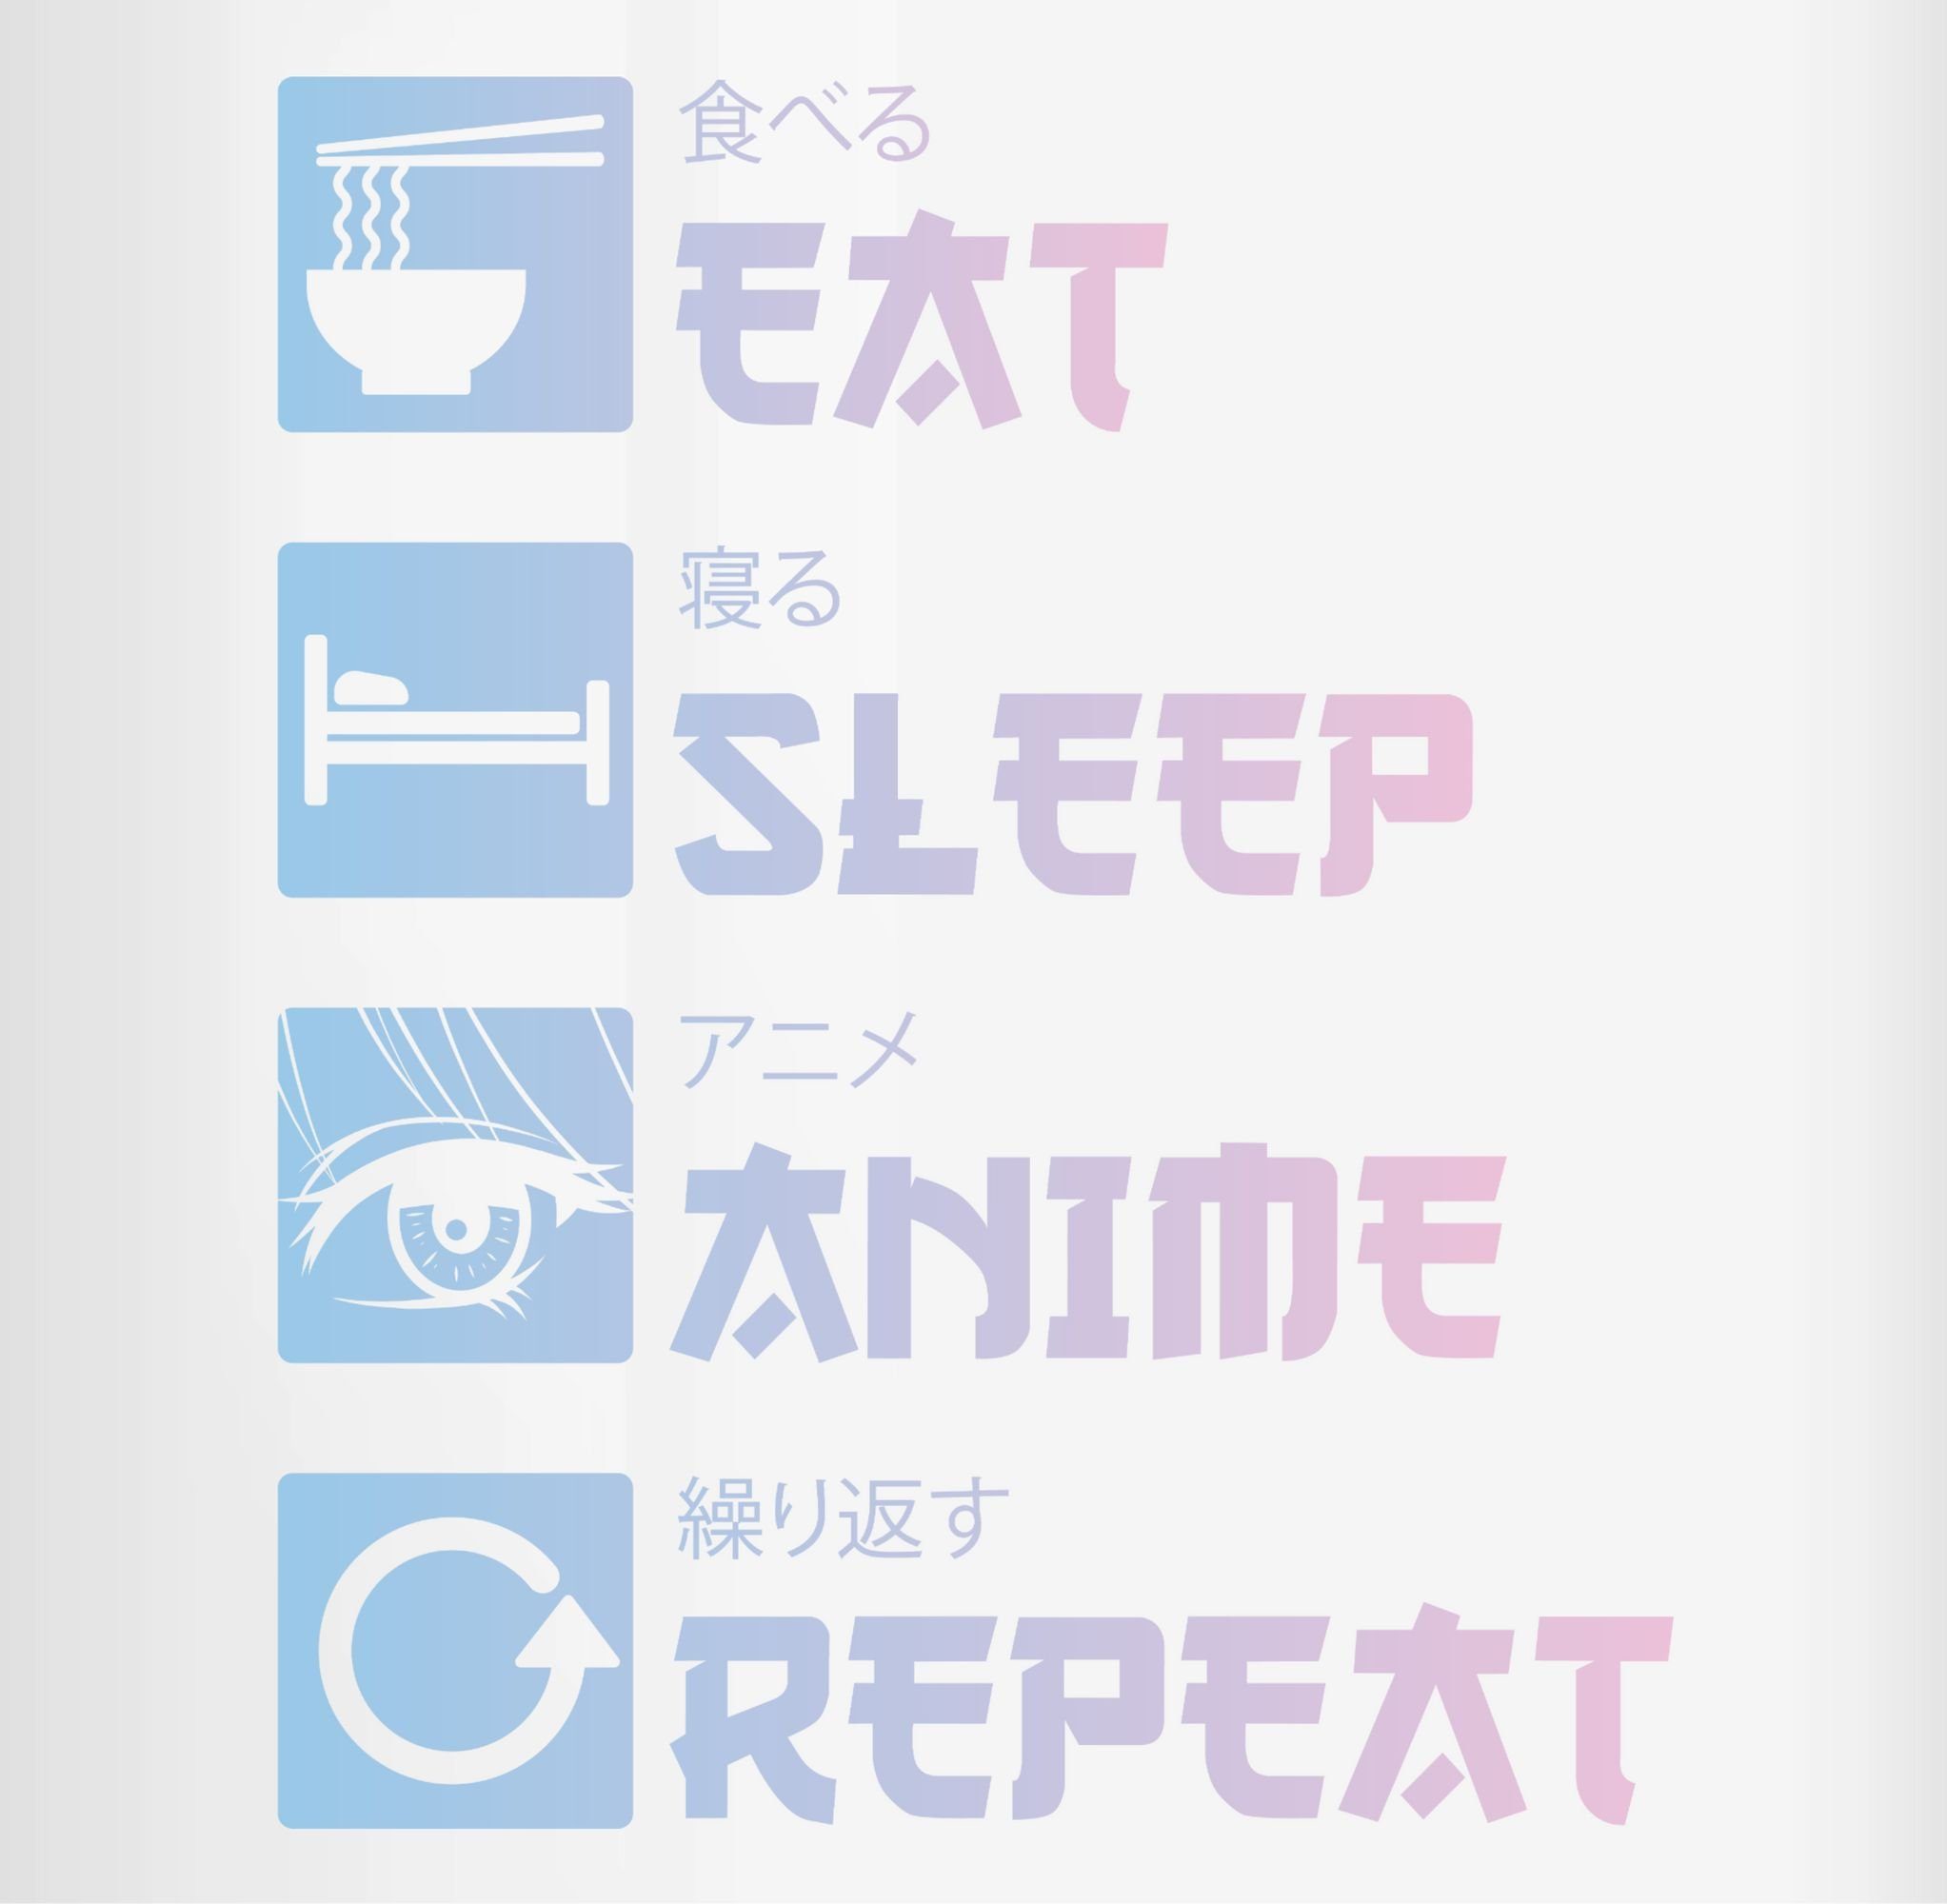 Repeat 1 - Shirtracer Anime Anime Eat Sleep Kaffeetasse Merch Keramik, Manga, Bordeauxrot Tasse